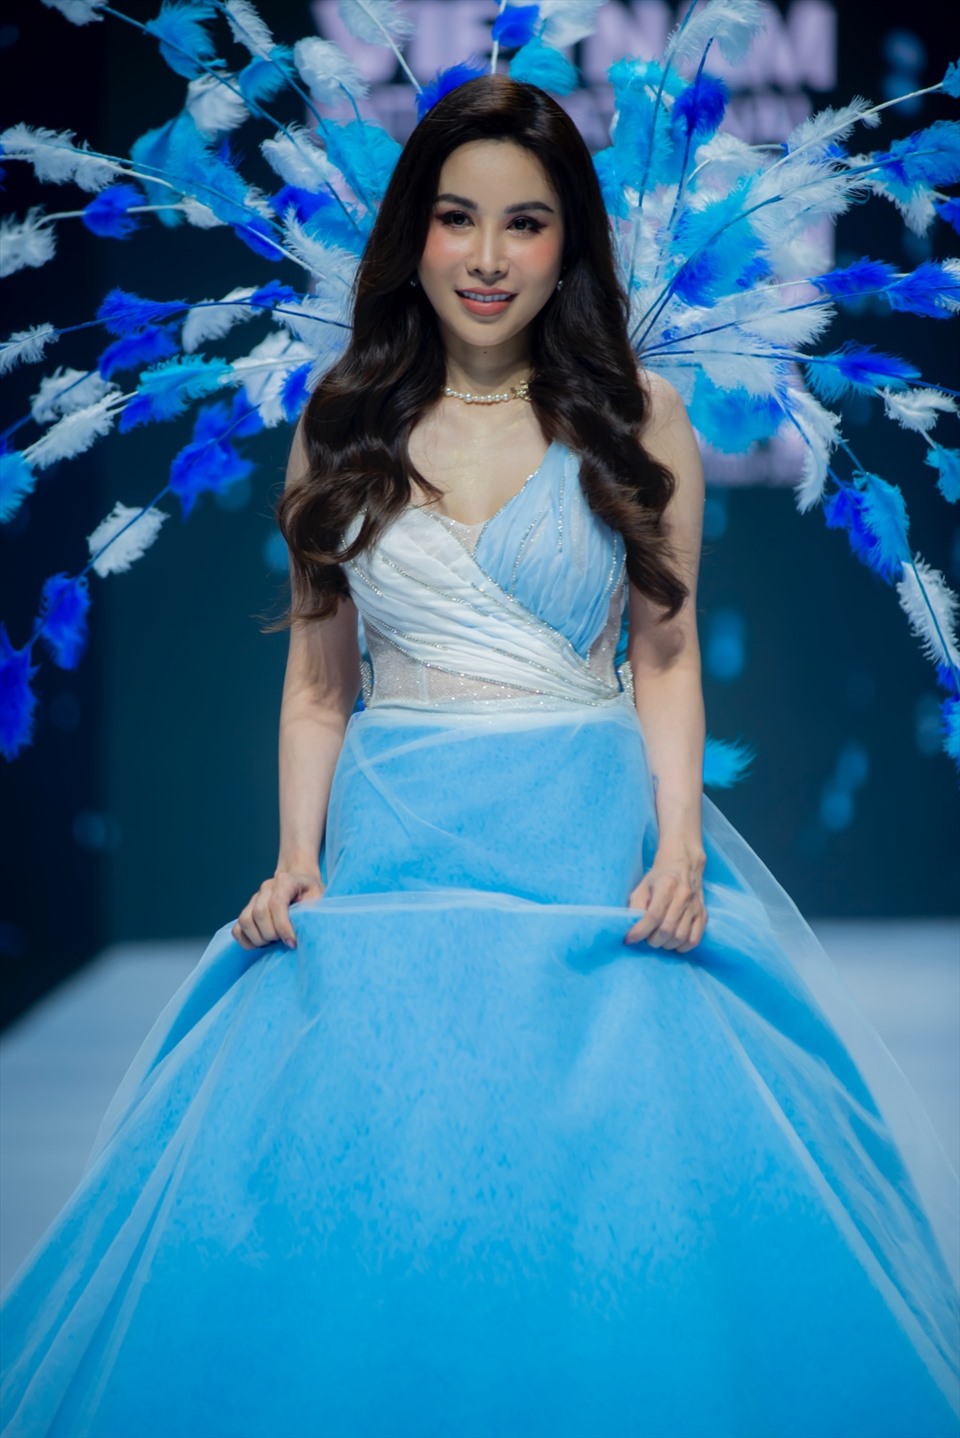 Trong mẫu thiết kế đầu tiên với sắc xanh thiên thanh, Hoa hậu Hoàng Dung hóa thành một “nàng công chúa”.